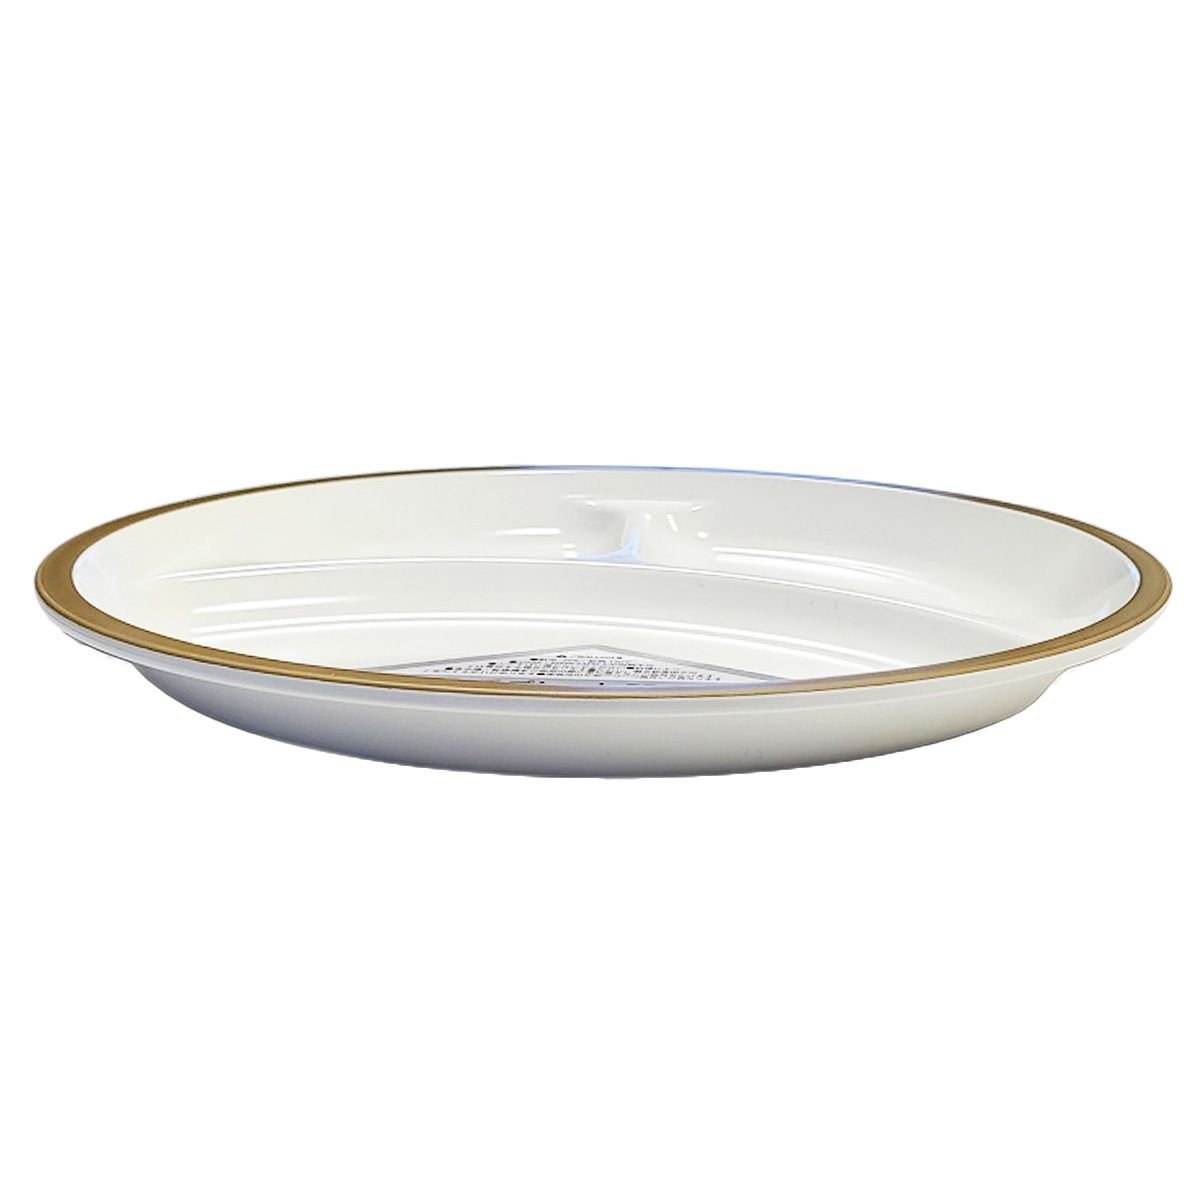 皿 仕切り皿 撥水ランチプレートワンプレートご飯 ベージュ 9001/342026